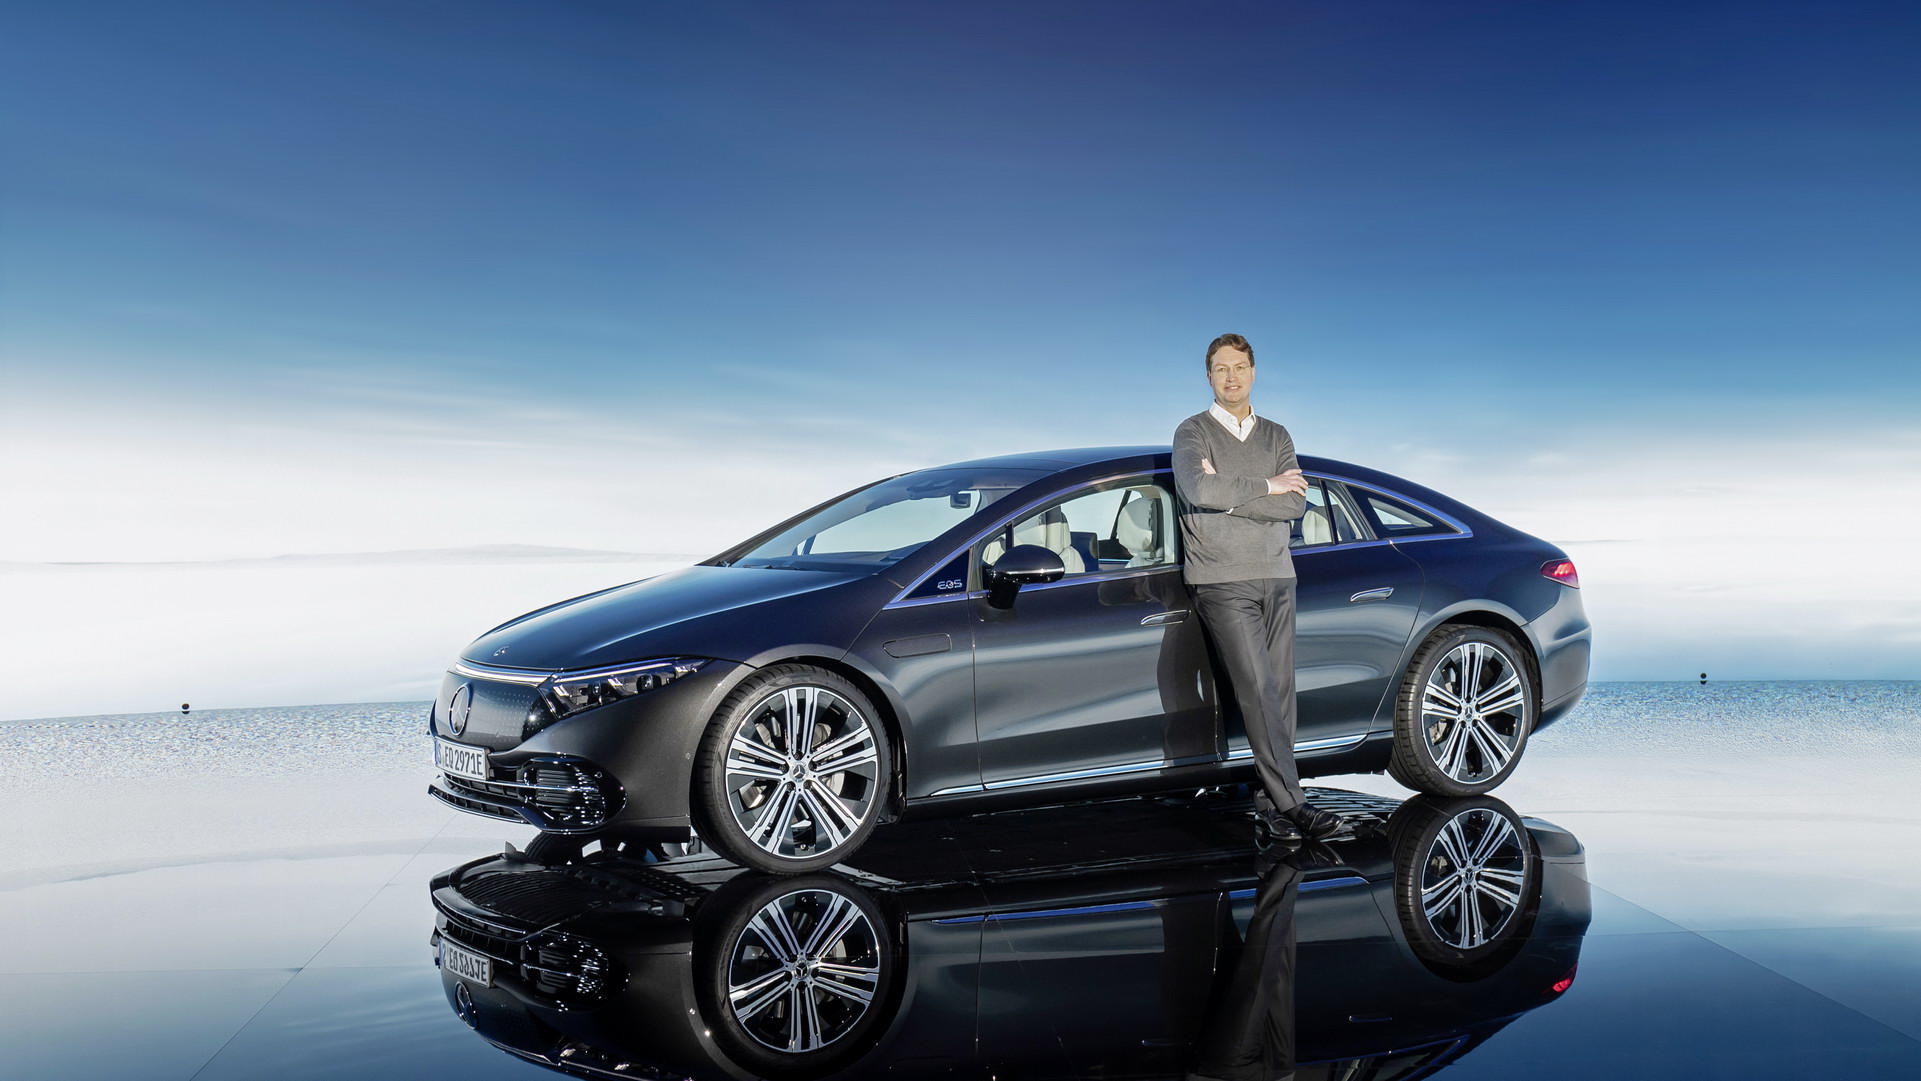 Siêu phẩm xe điện Mercedes-Benz EQS chính thức ra mắt: Tầm hoạt động 770 km, hiện đại như robot - Ảnh 2.